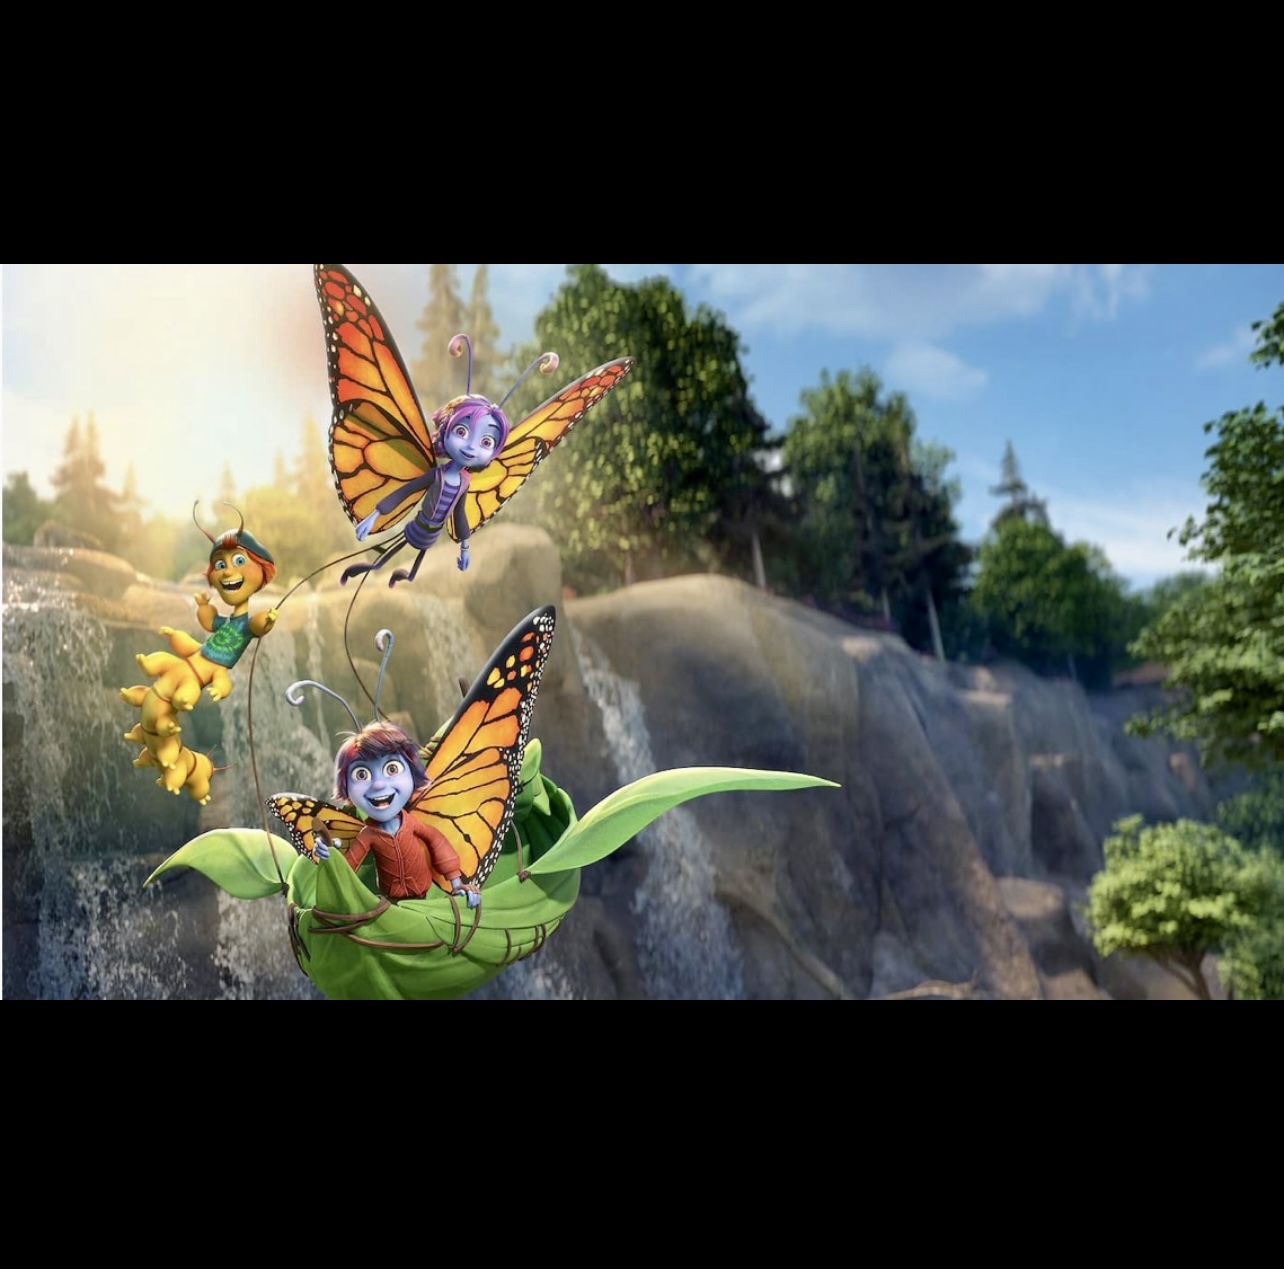 La légende du papillon : Un groupe de papillons survolant gracieusement une cascade, envoûtant tous ceux qui sont témoins de leur danse enchanteresse.